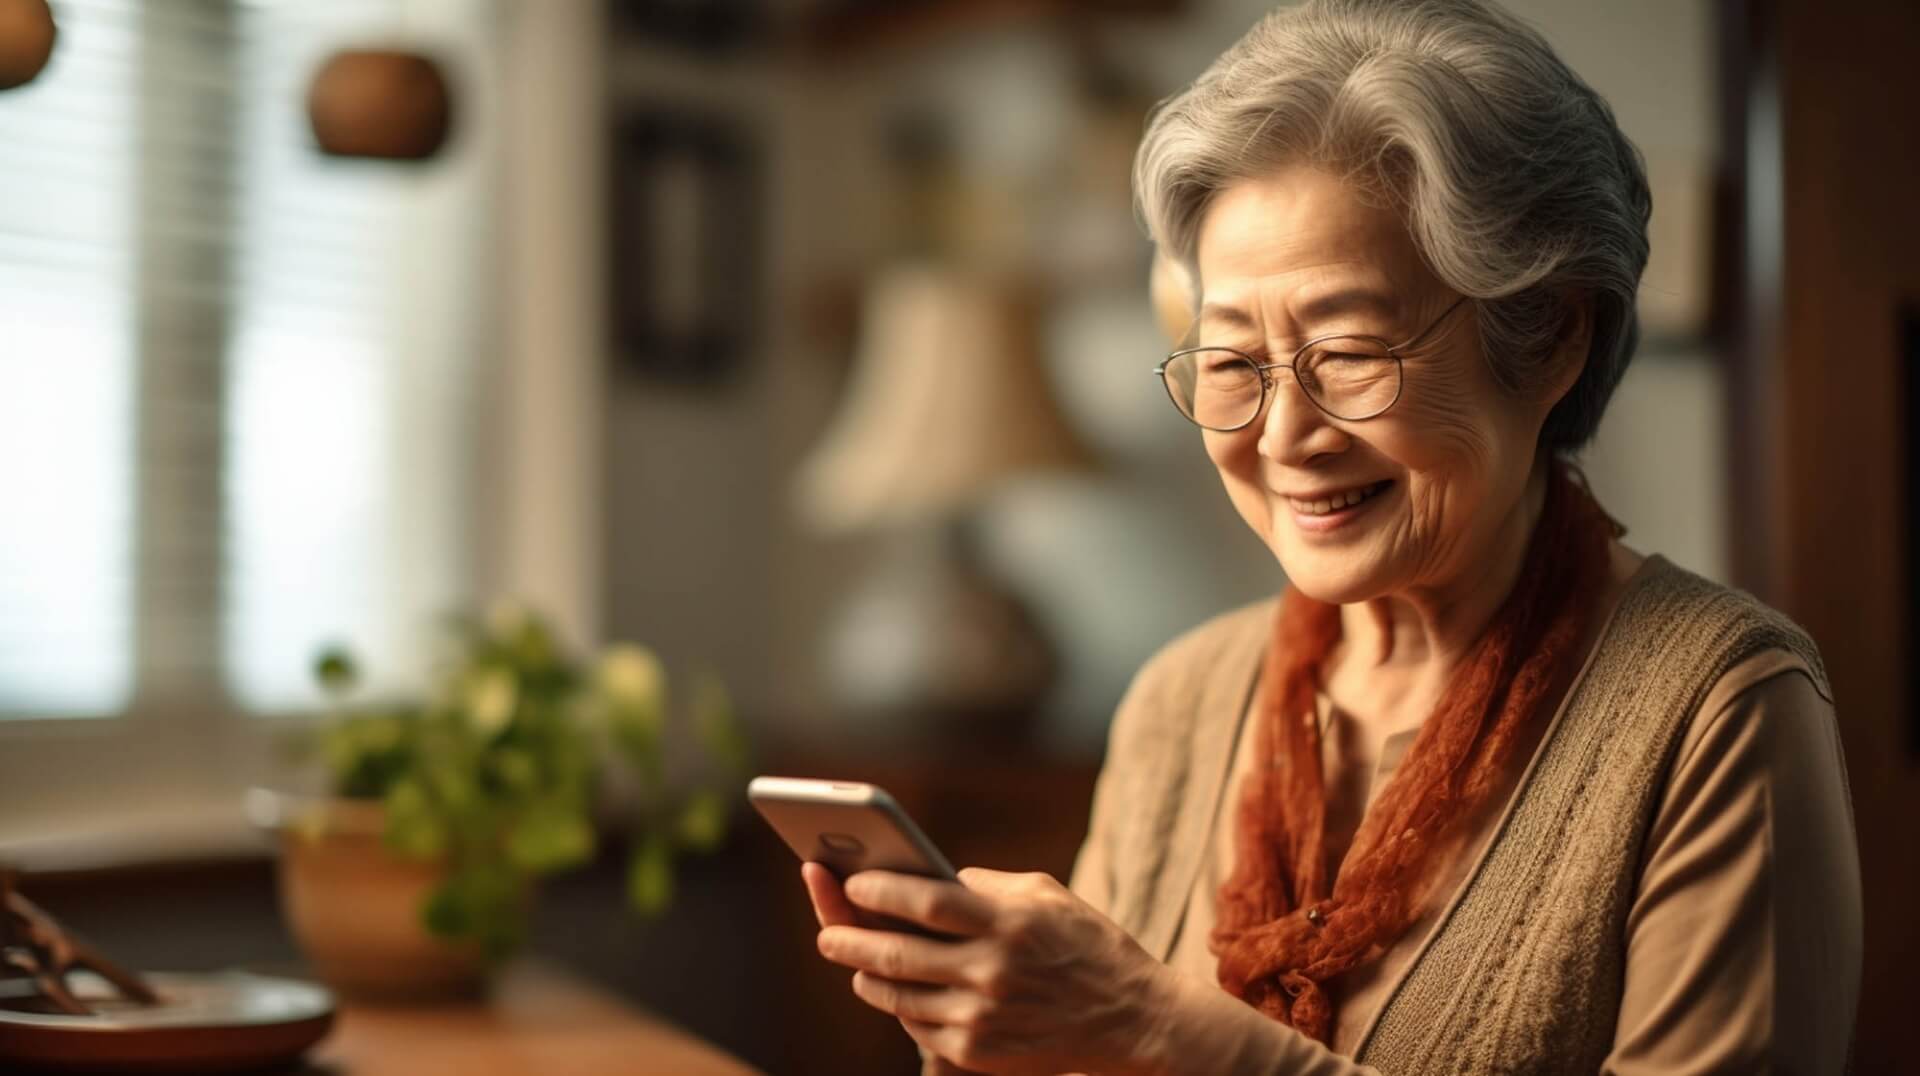 ご高齢の女性が笑顔でスマートフォンを操作している写真